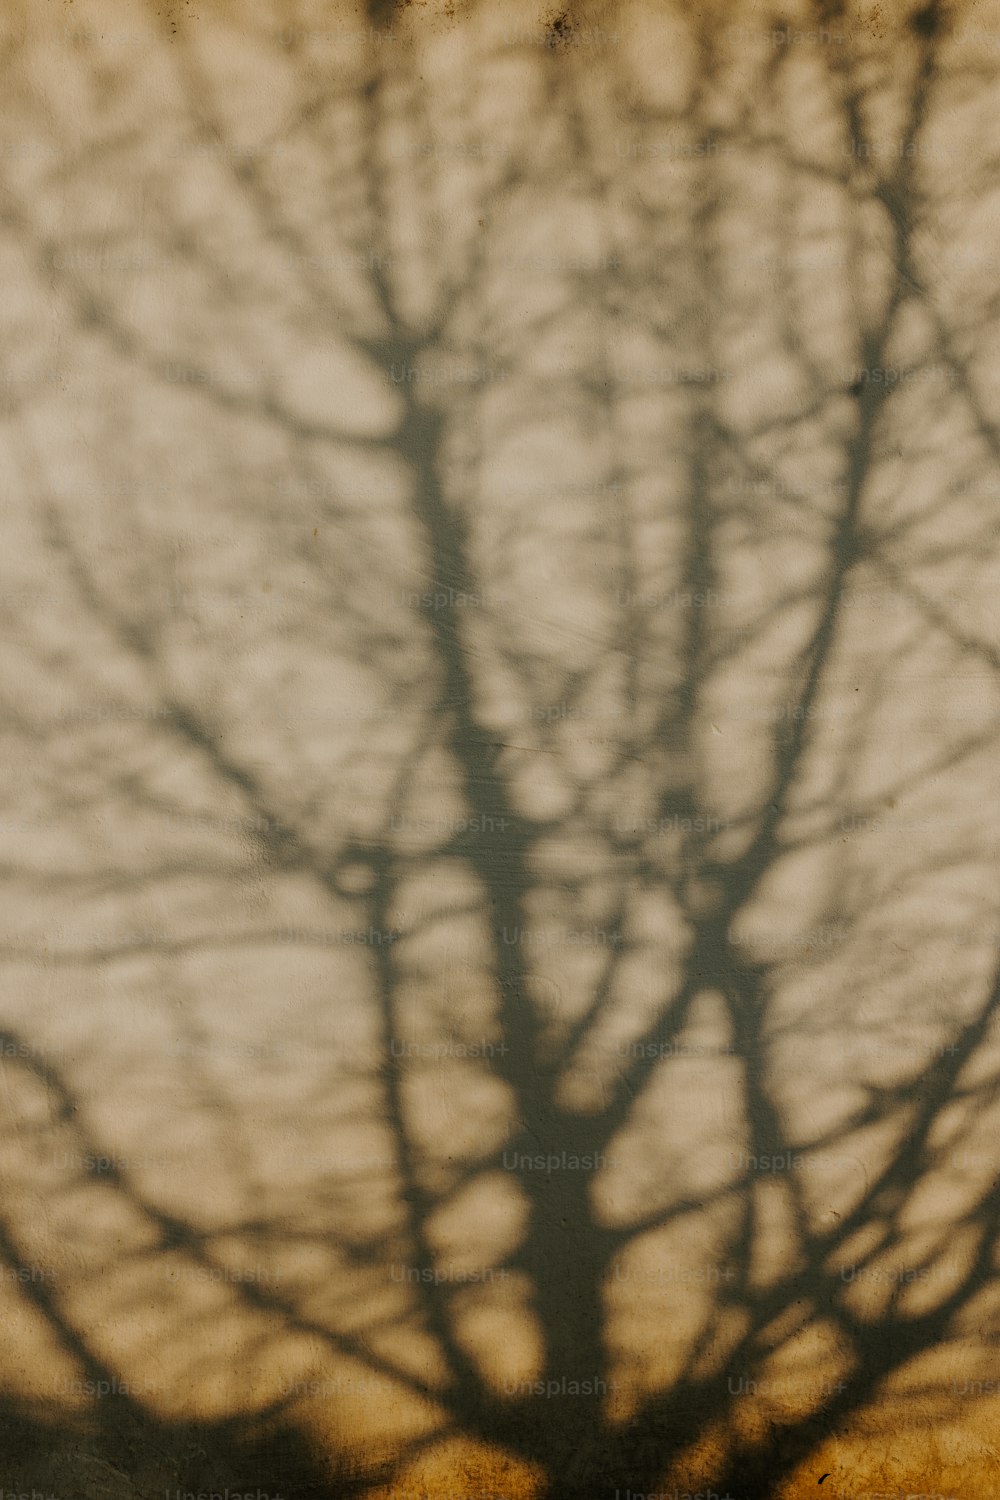 un arbre projetant une ombre sur un mur